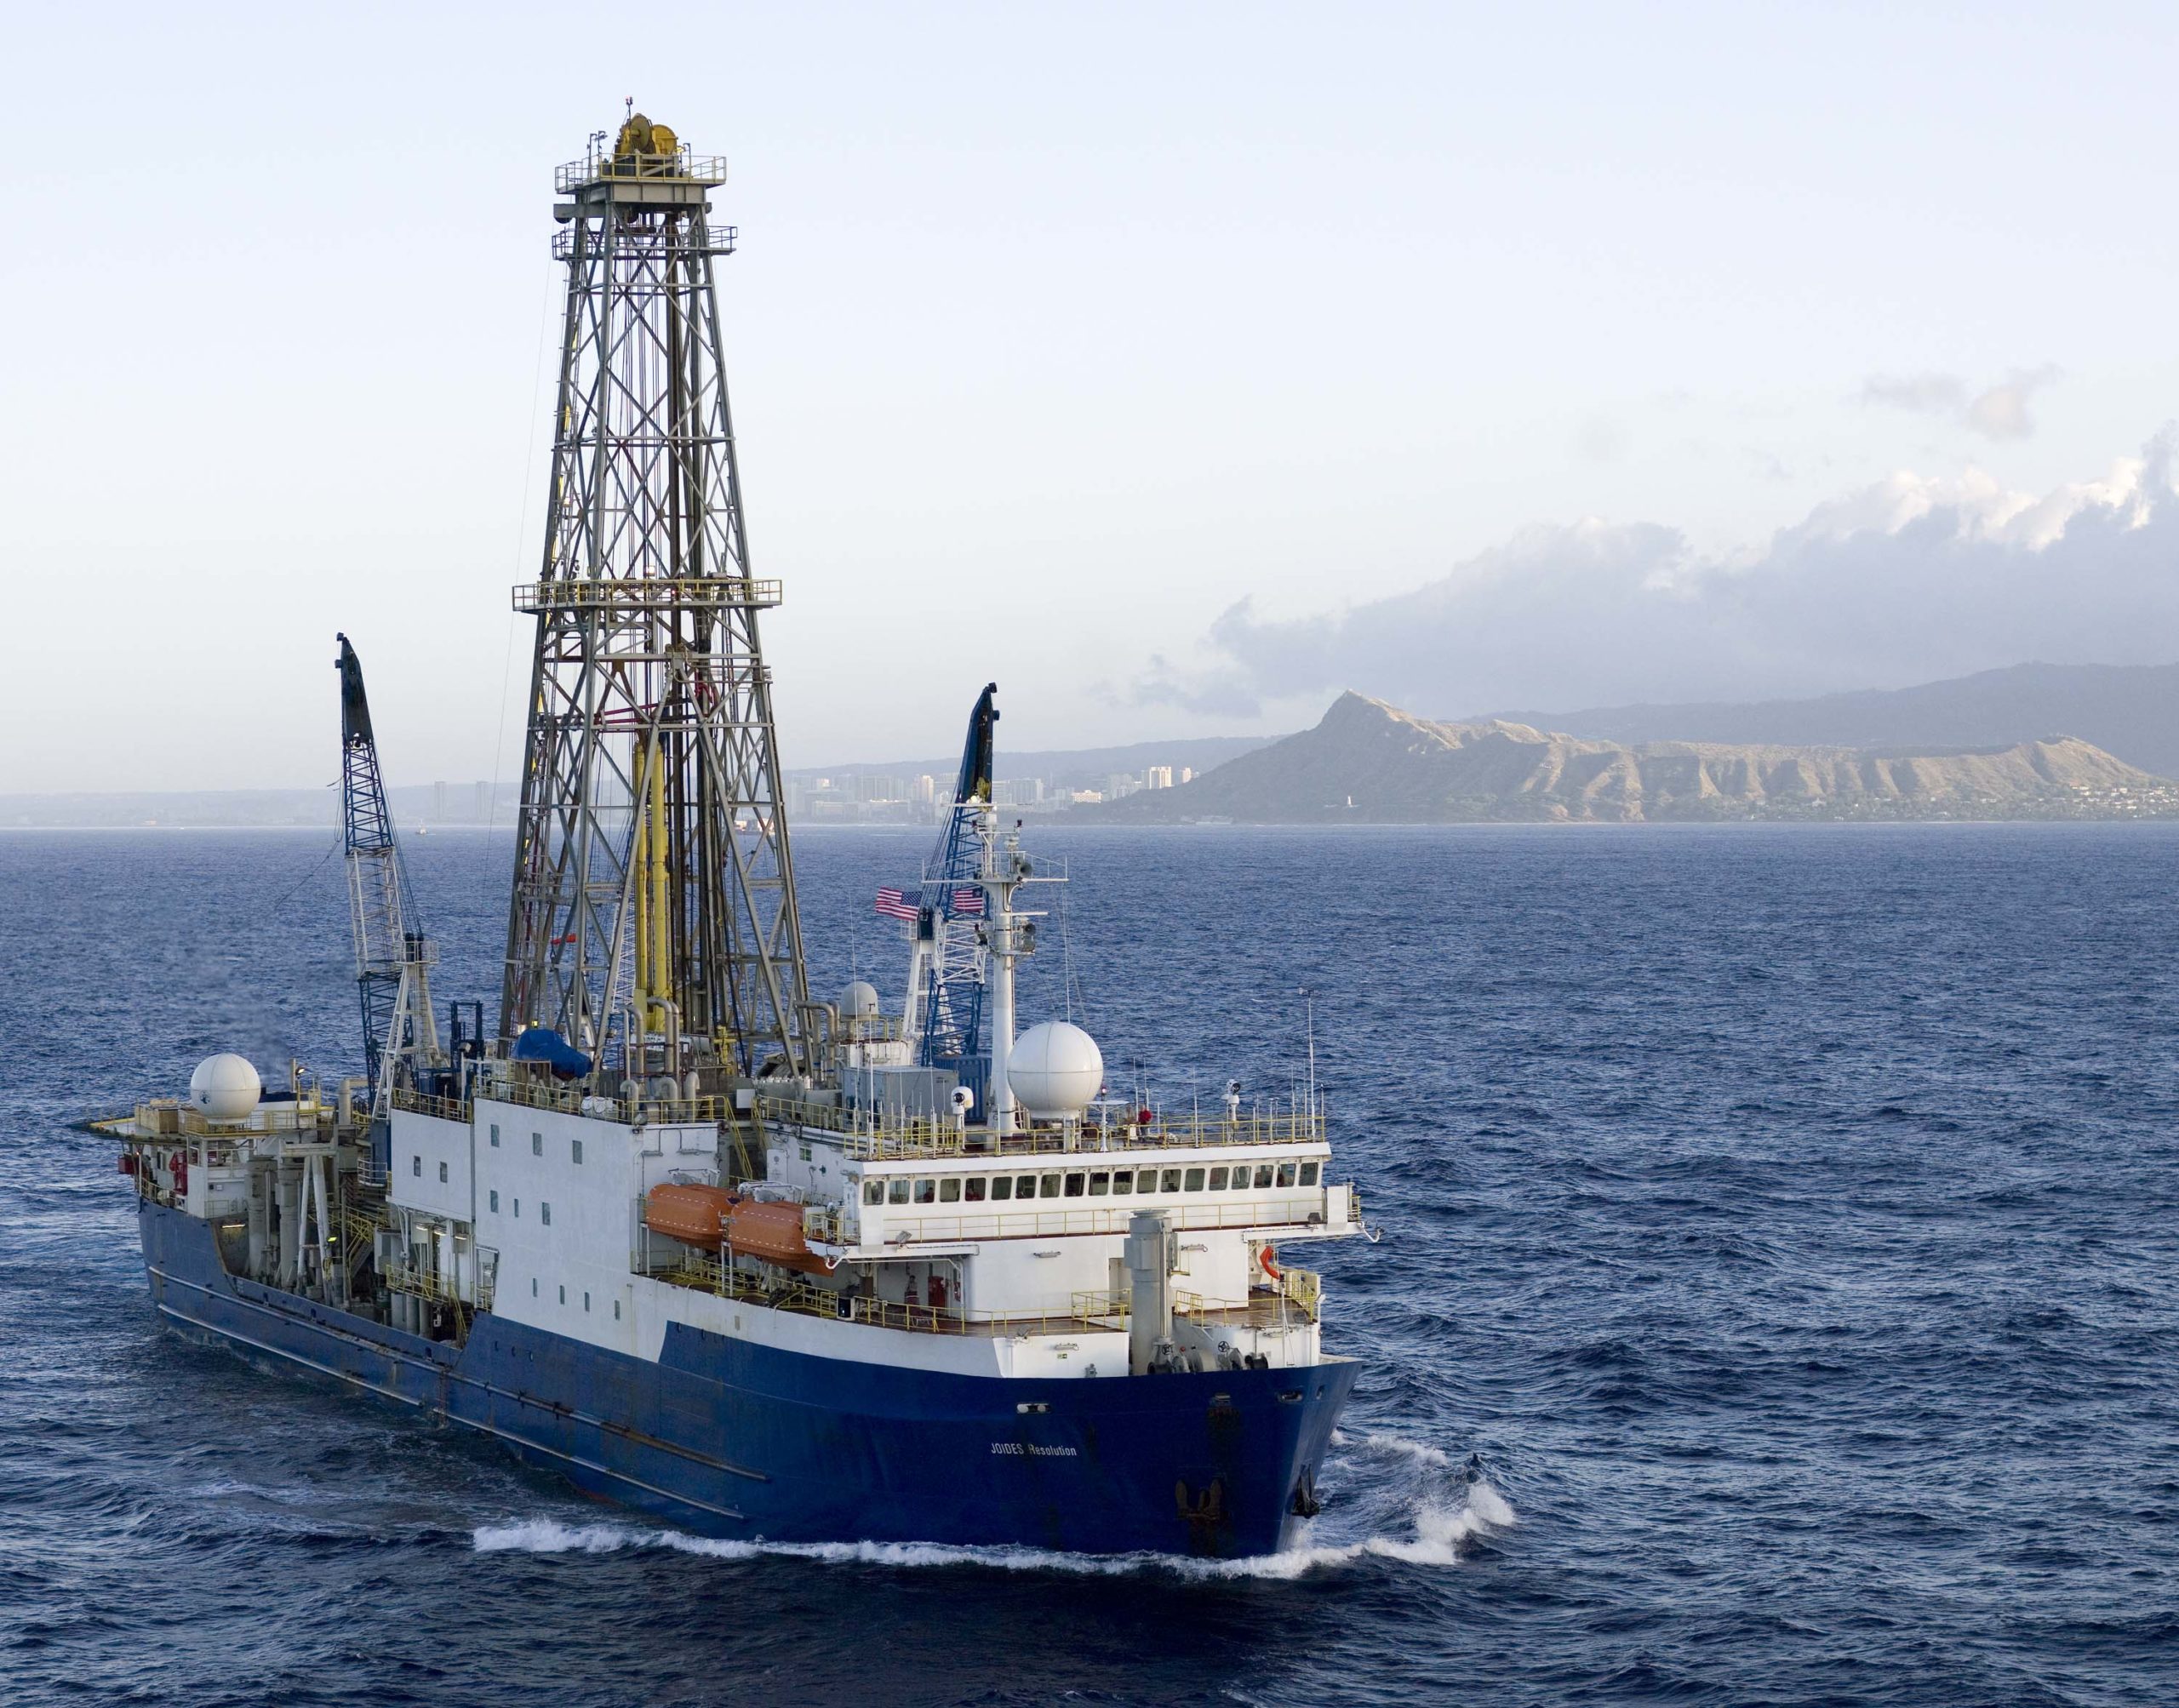 Αμερικανικό ερευνητικό πλοίο ξεκινά τις θαλάσσιες γεωτρήσεις γύρω από τα ηφαίστεια της Σαντορίνης